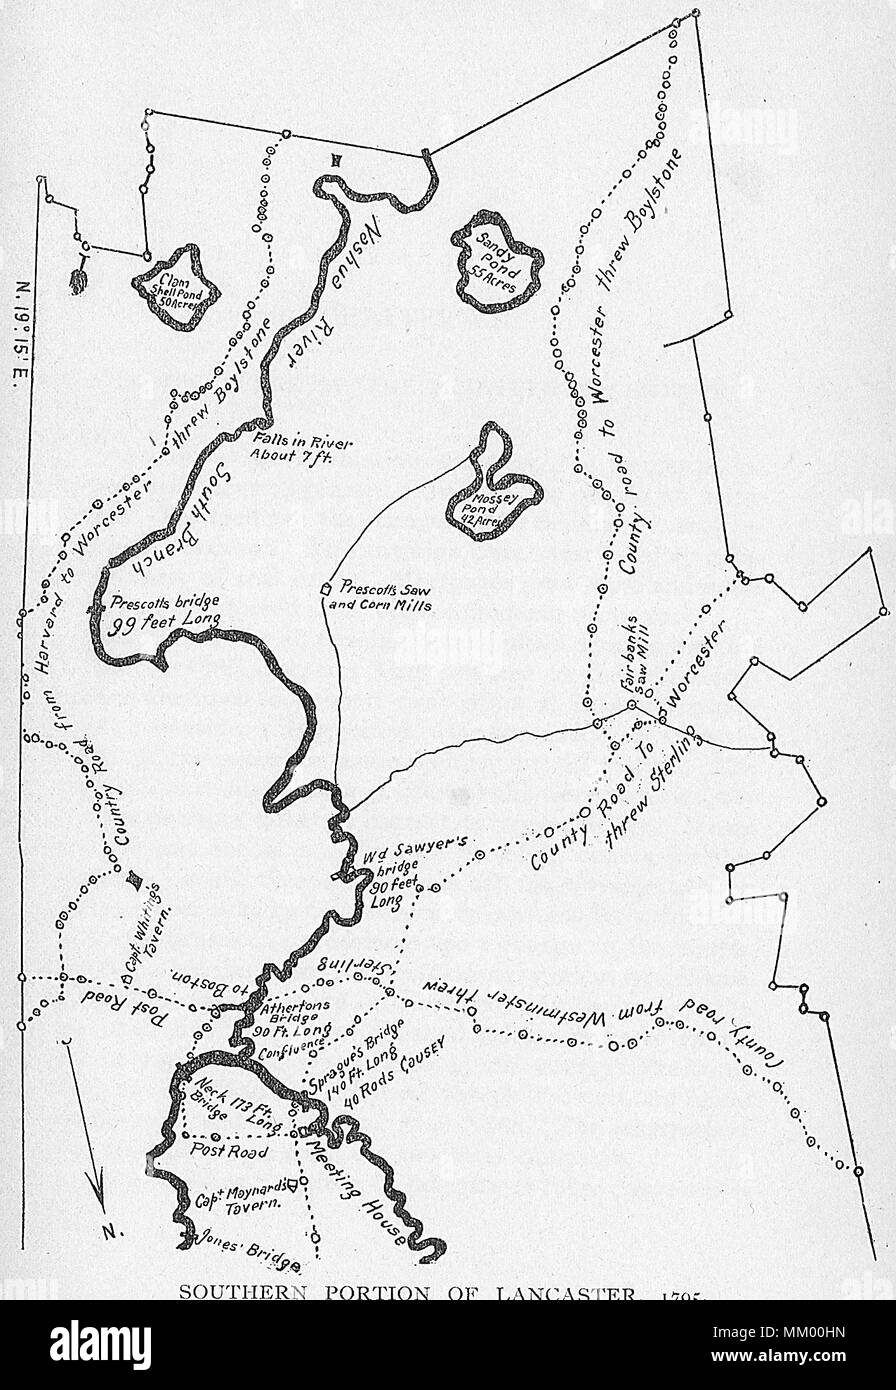 Plan de partie Sud de Lancaster. 1795 Banque D'Images